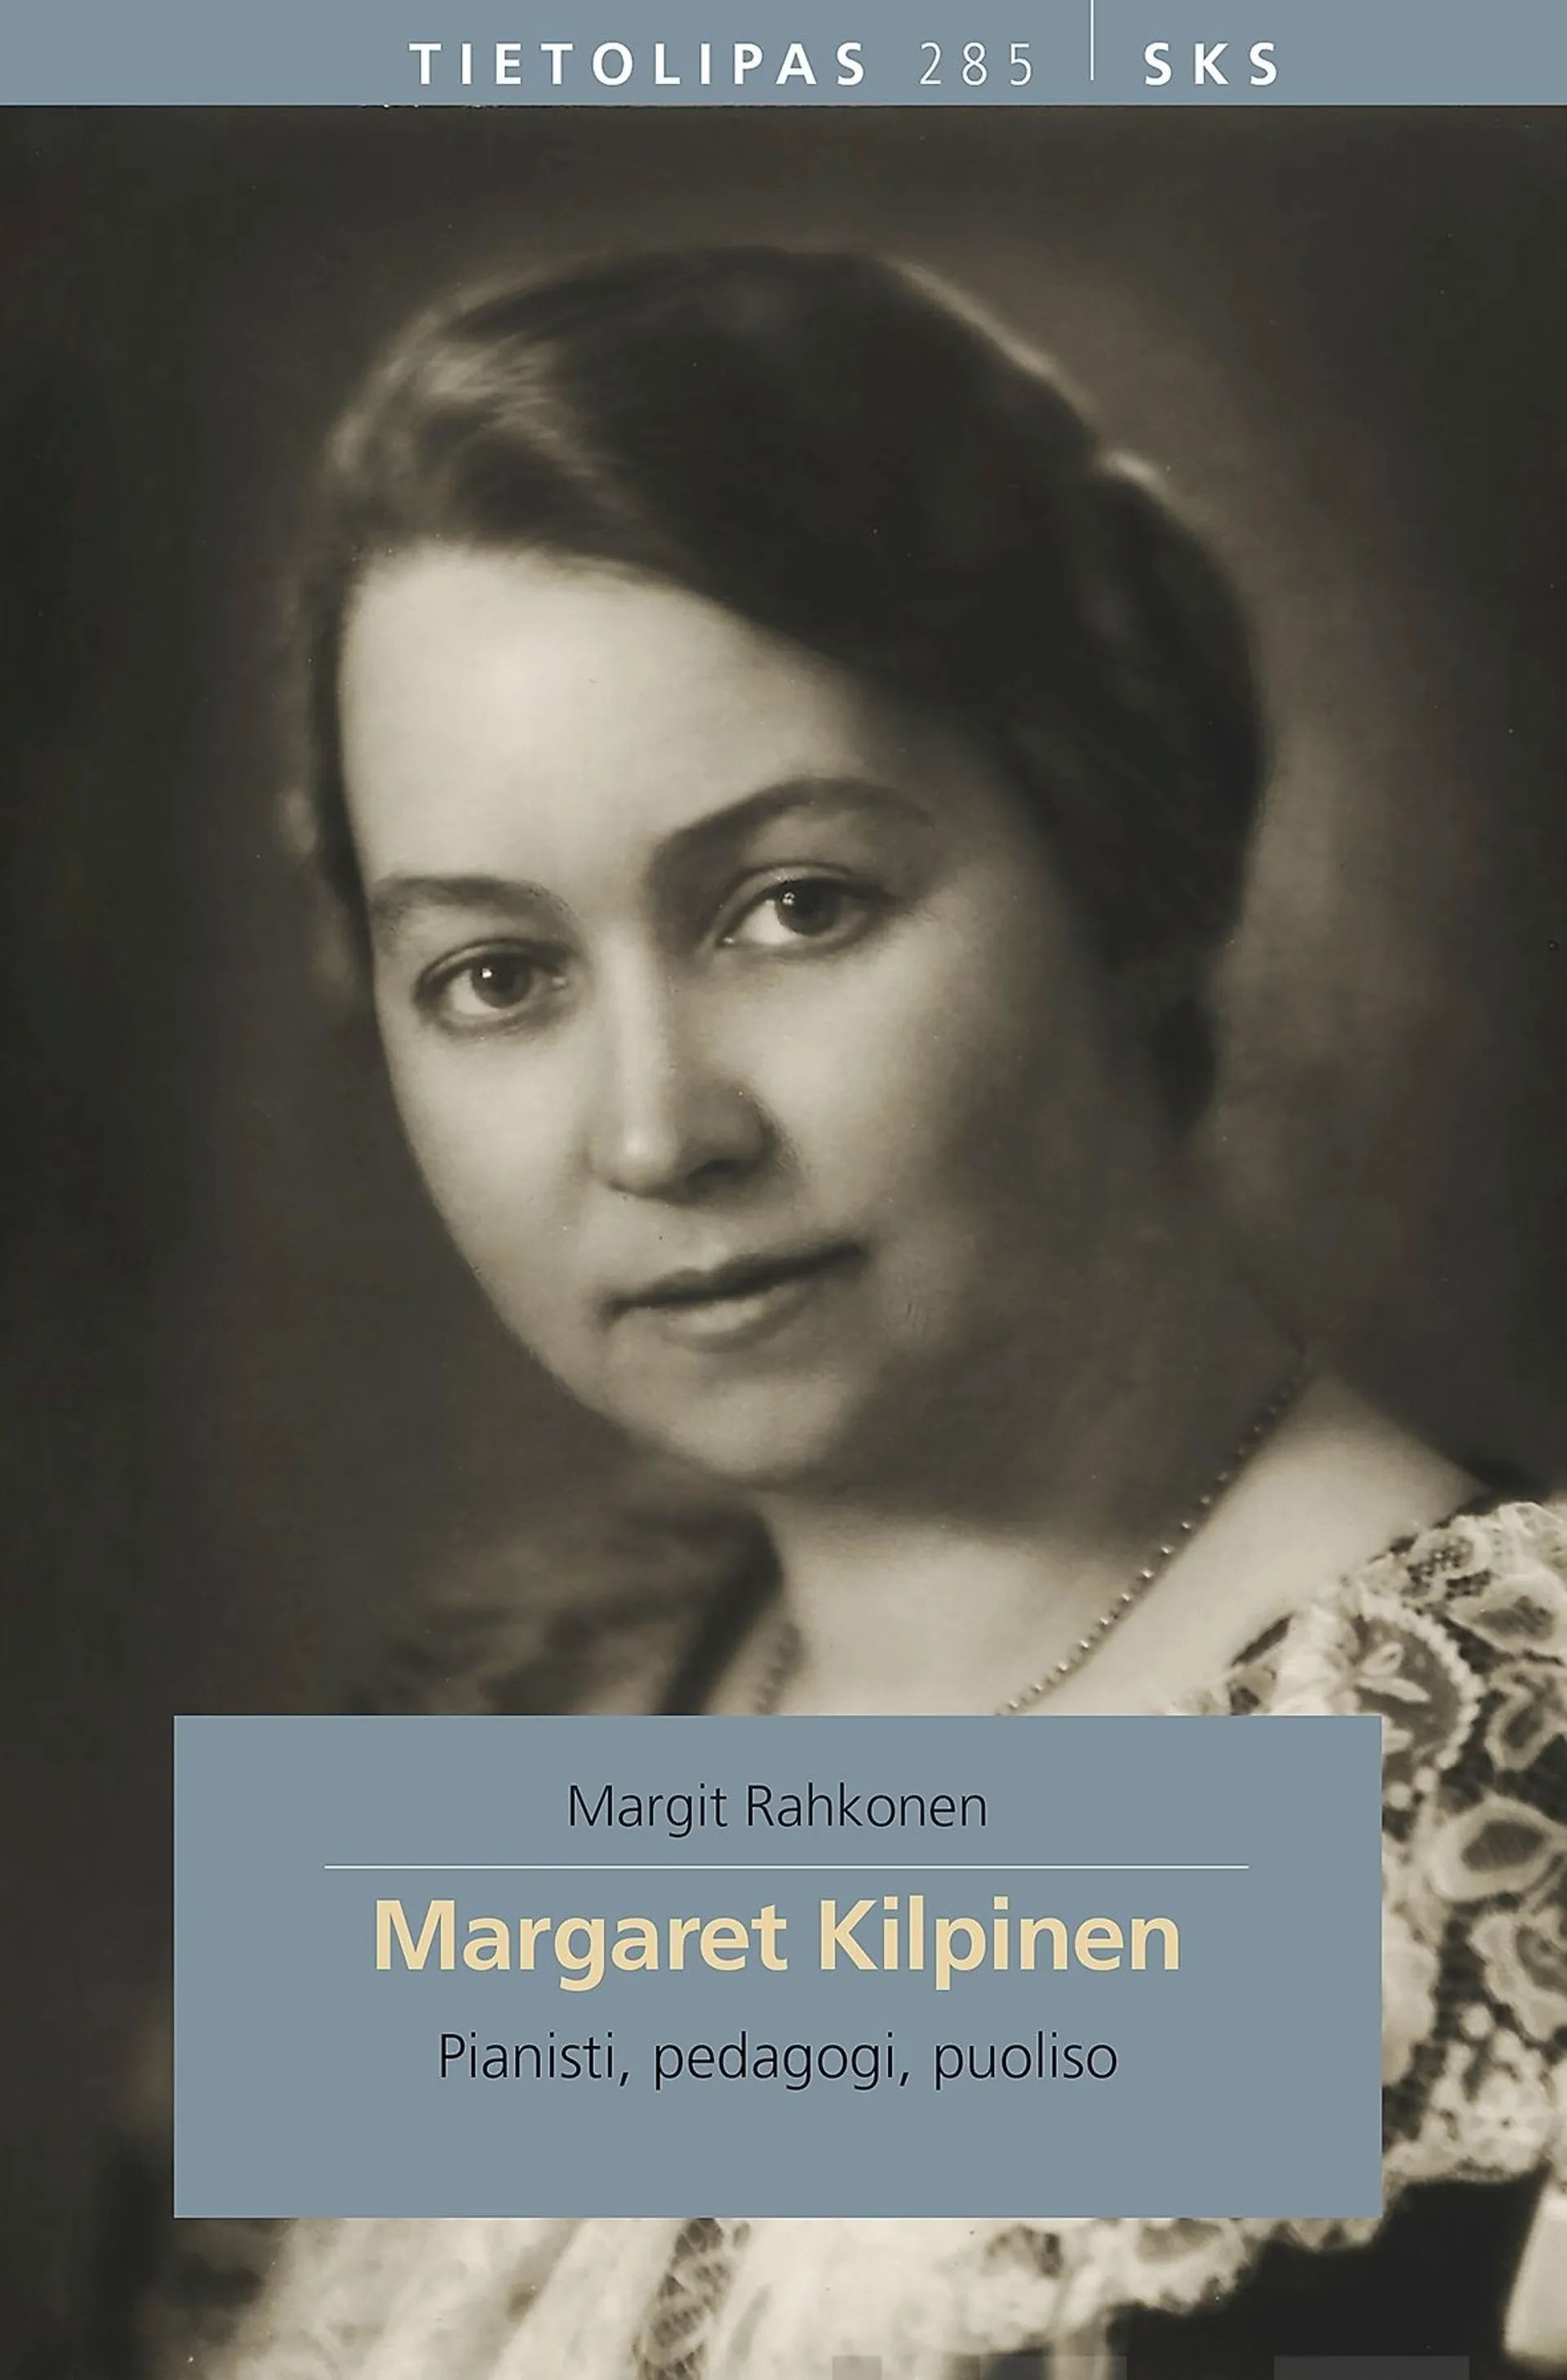 Rahkonen, Margaret Kilpinen - Pianisti, pedagogi, puoliso